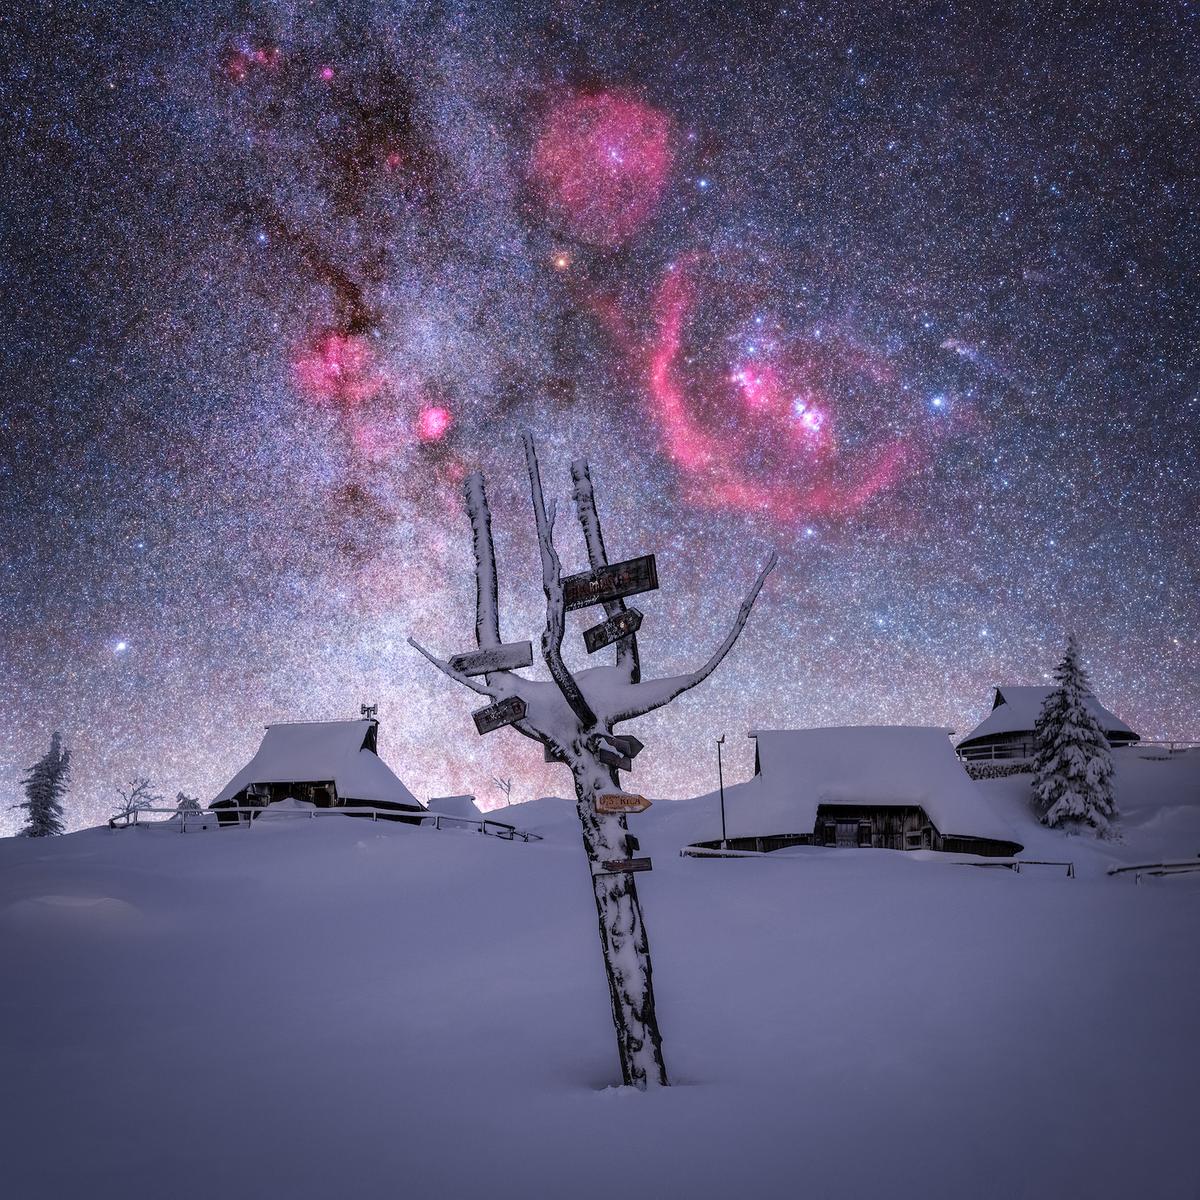 Stellar Signpost. (Courtesy of <a href="https://www.facebook.com/urosphotograph/">Uroš Fink</a>)